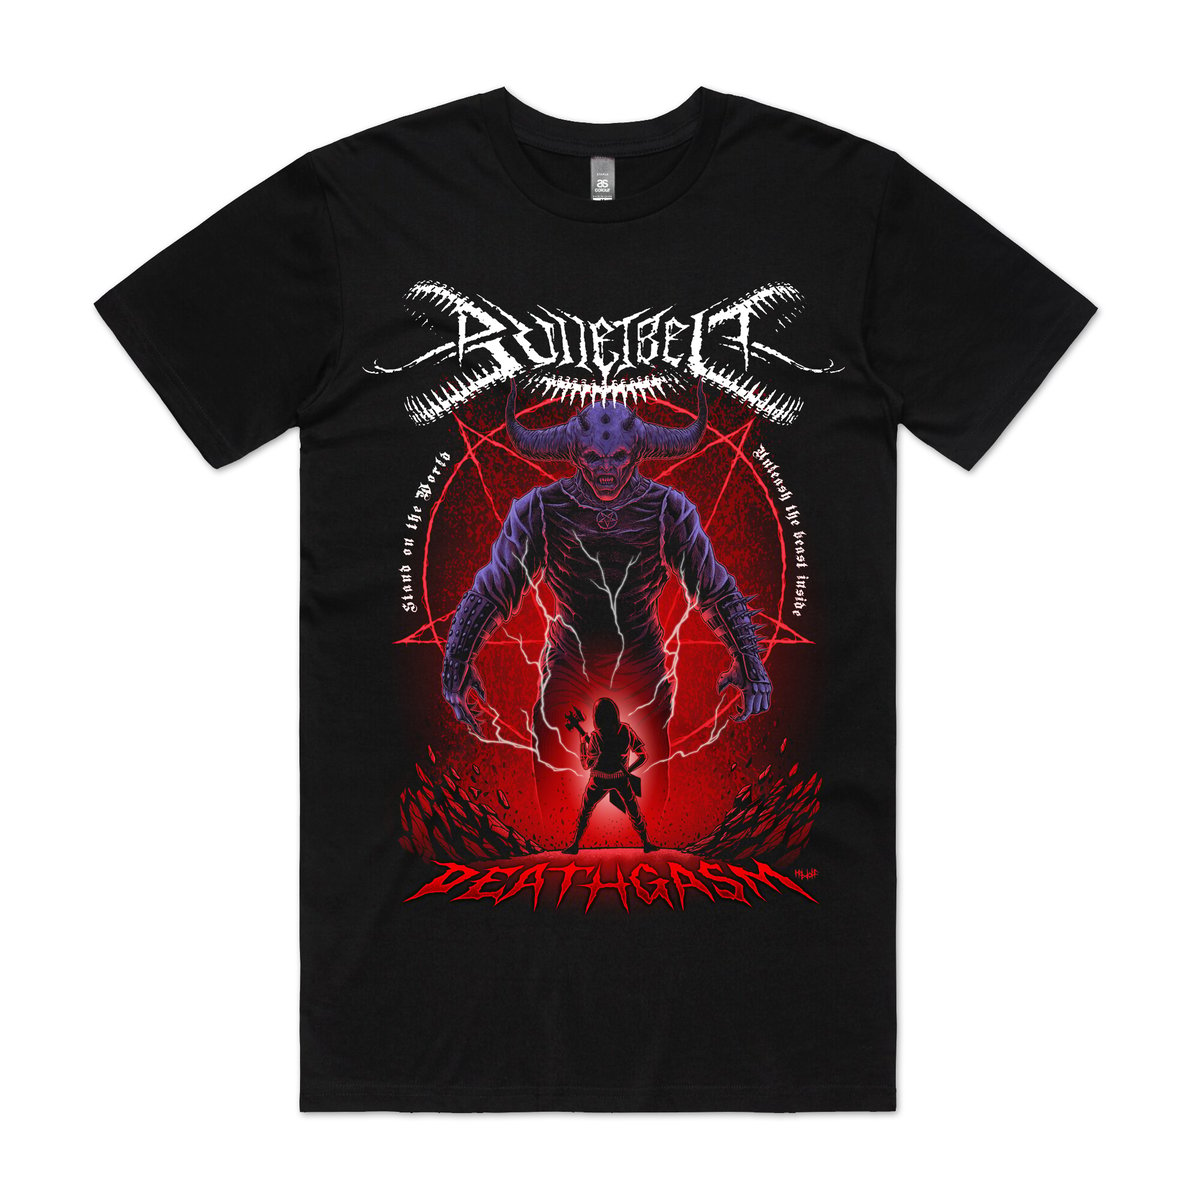 Image of Bulletbelt "Deathgasm" T-Shirt